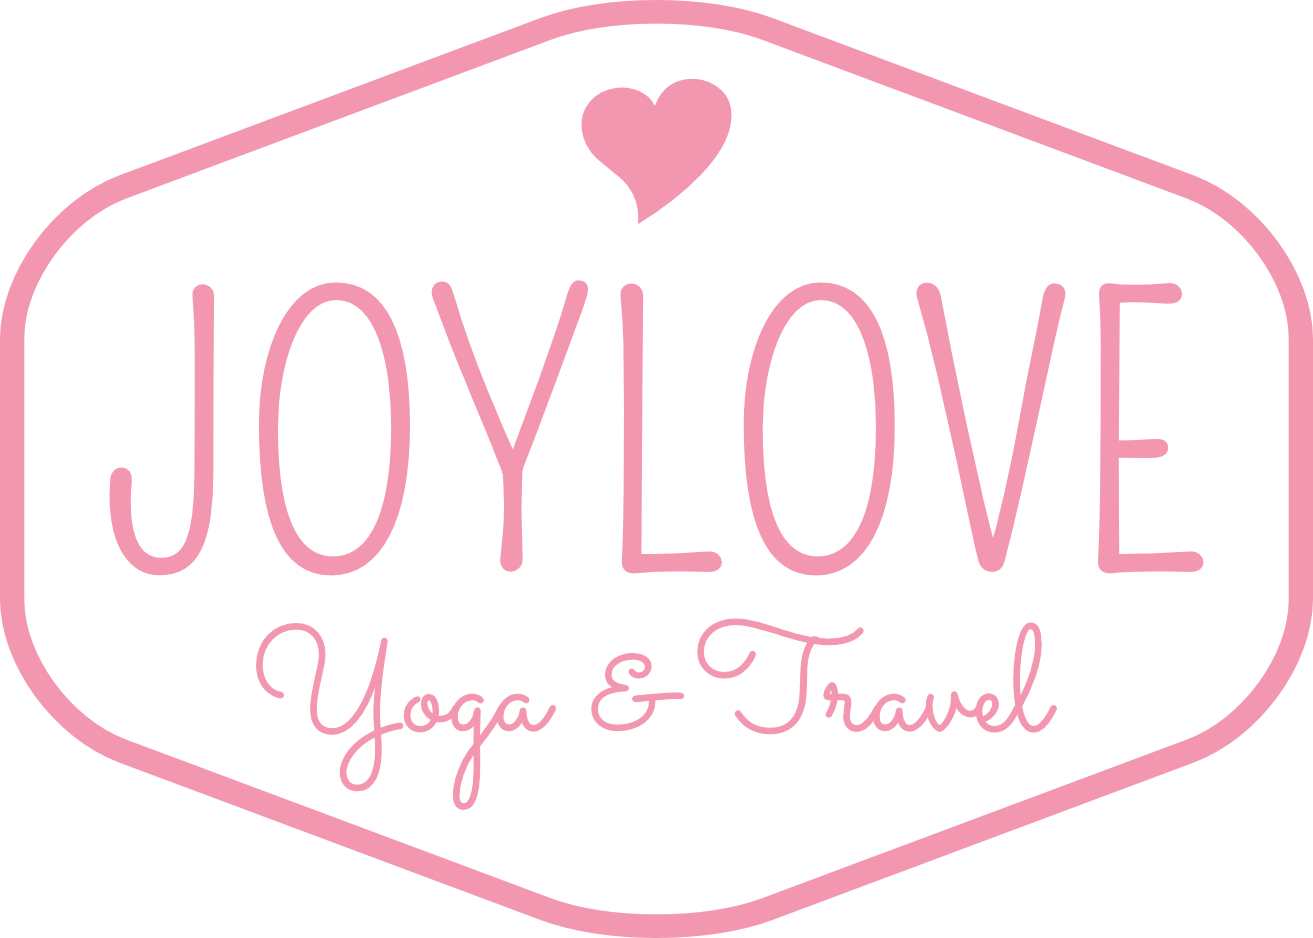 JOYLOVE ♥ Yoga & Travel